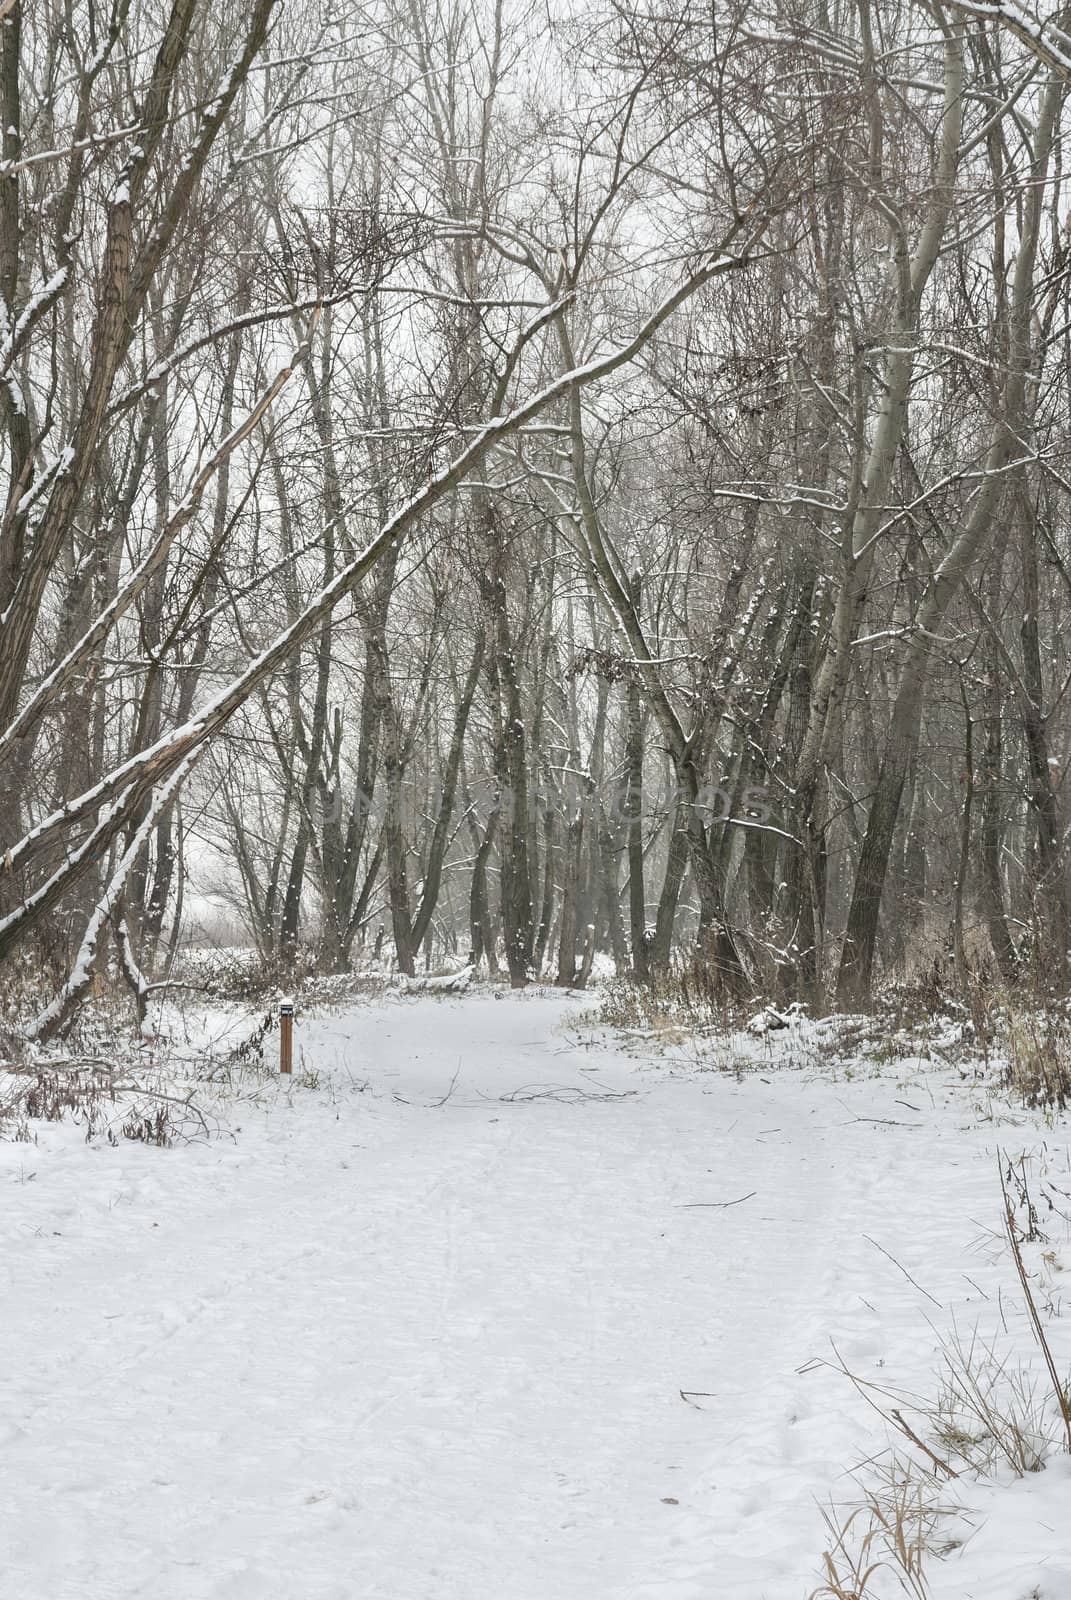 Snowy scene in woodland, Warszawa, Poland.